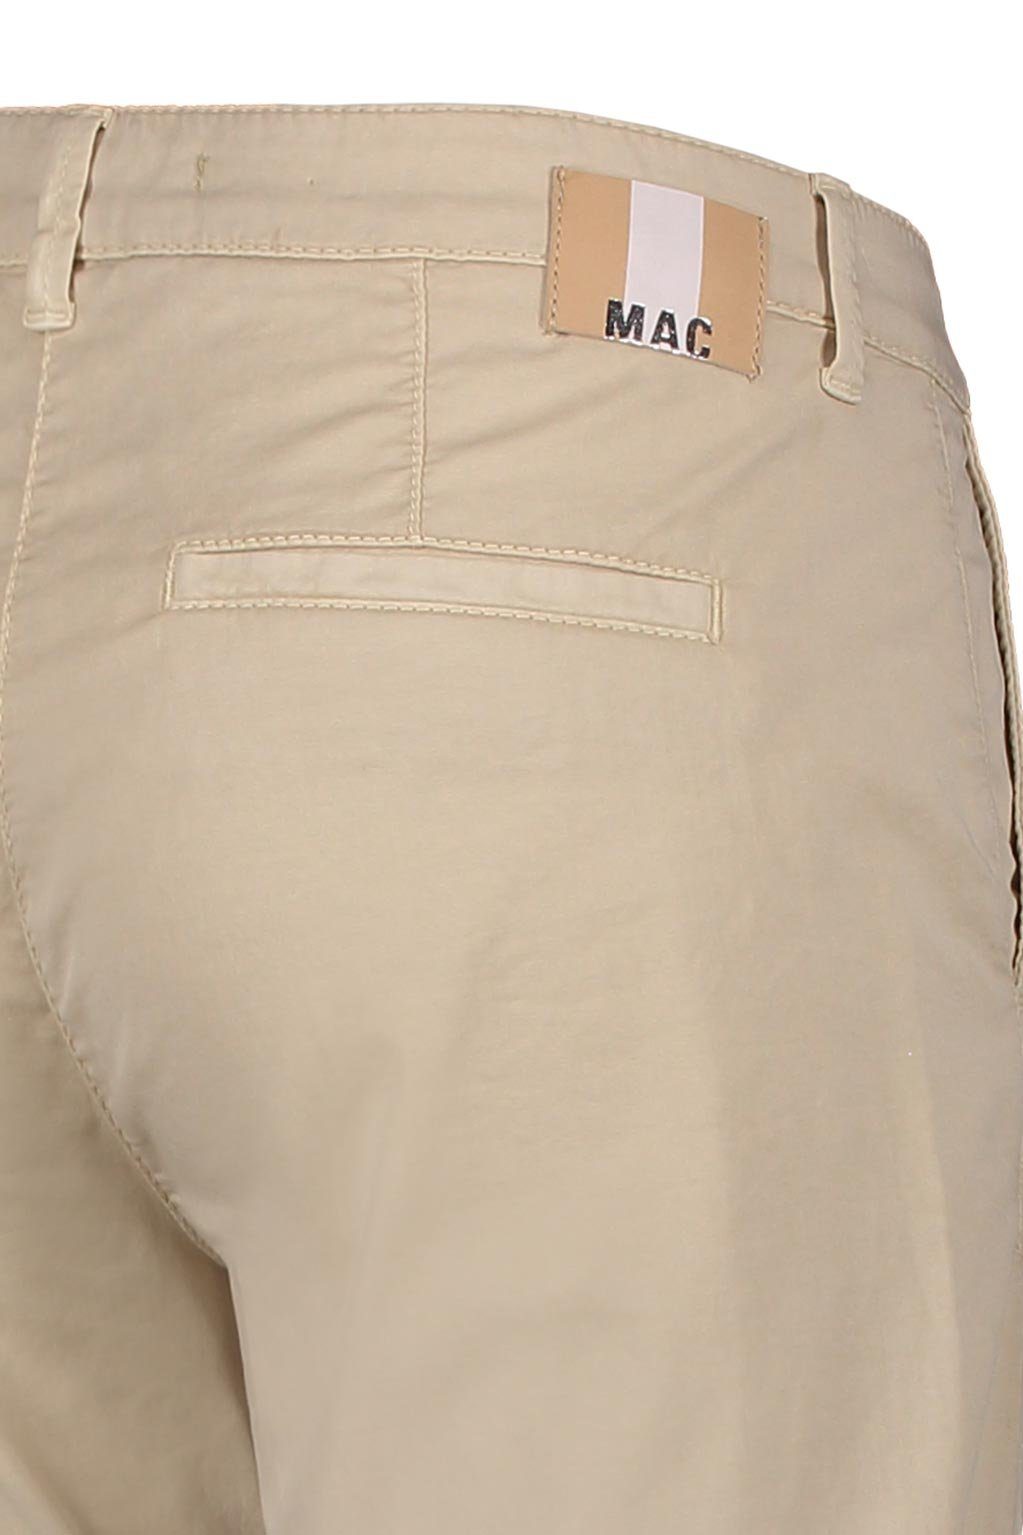 PPT beige MAC MAC wheat CHINO Stretch-Jeans 3070-00-0408L 205R